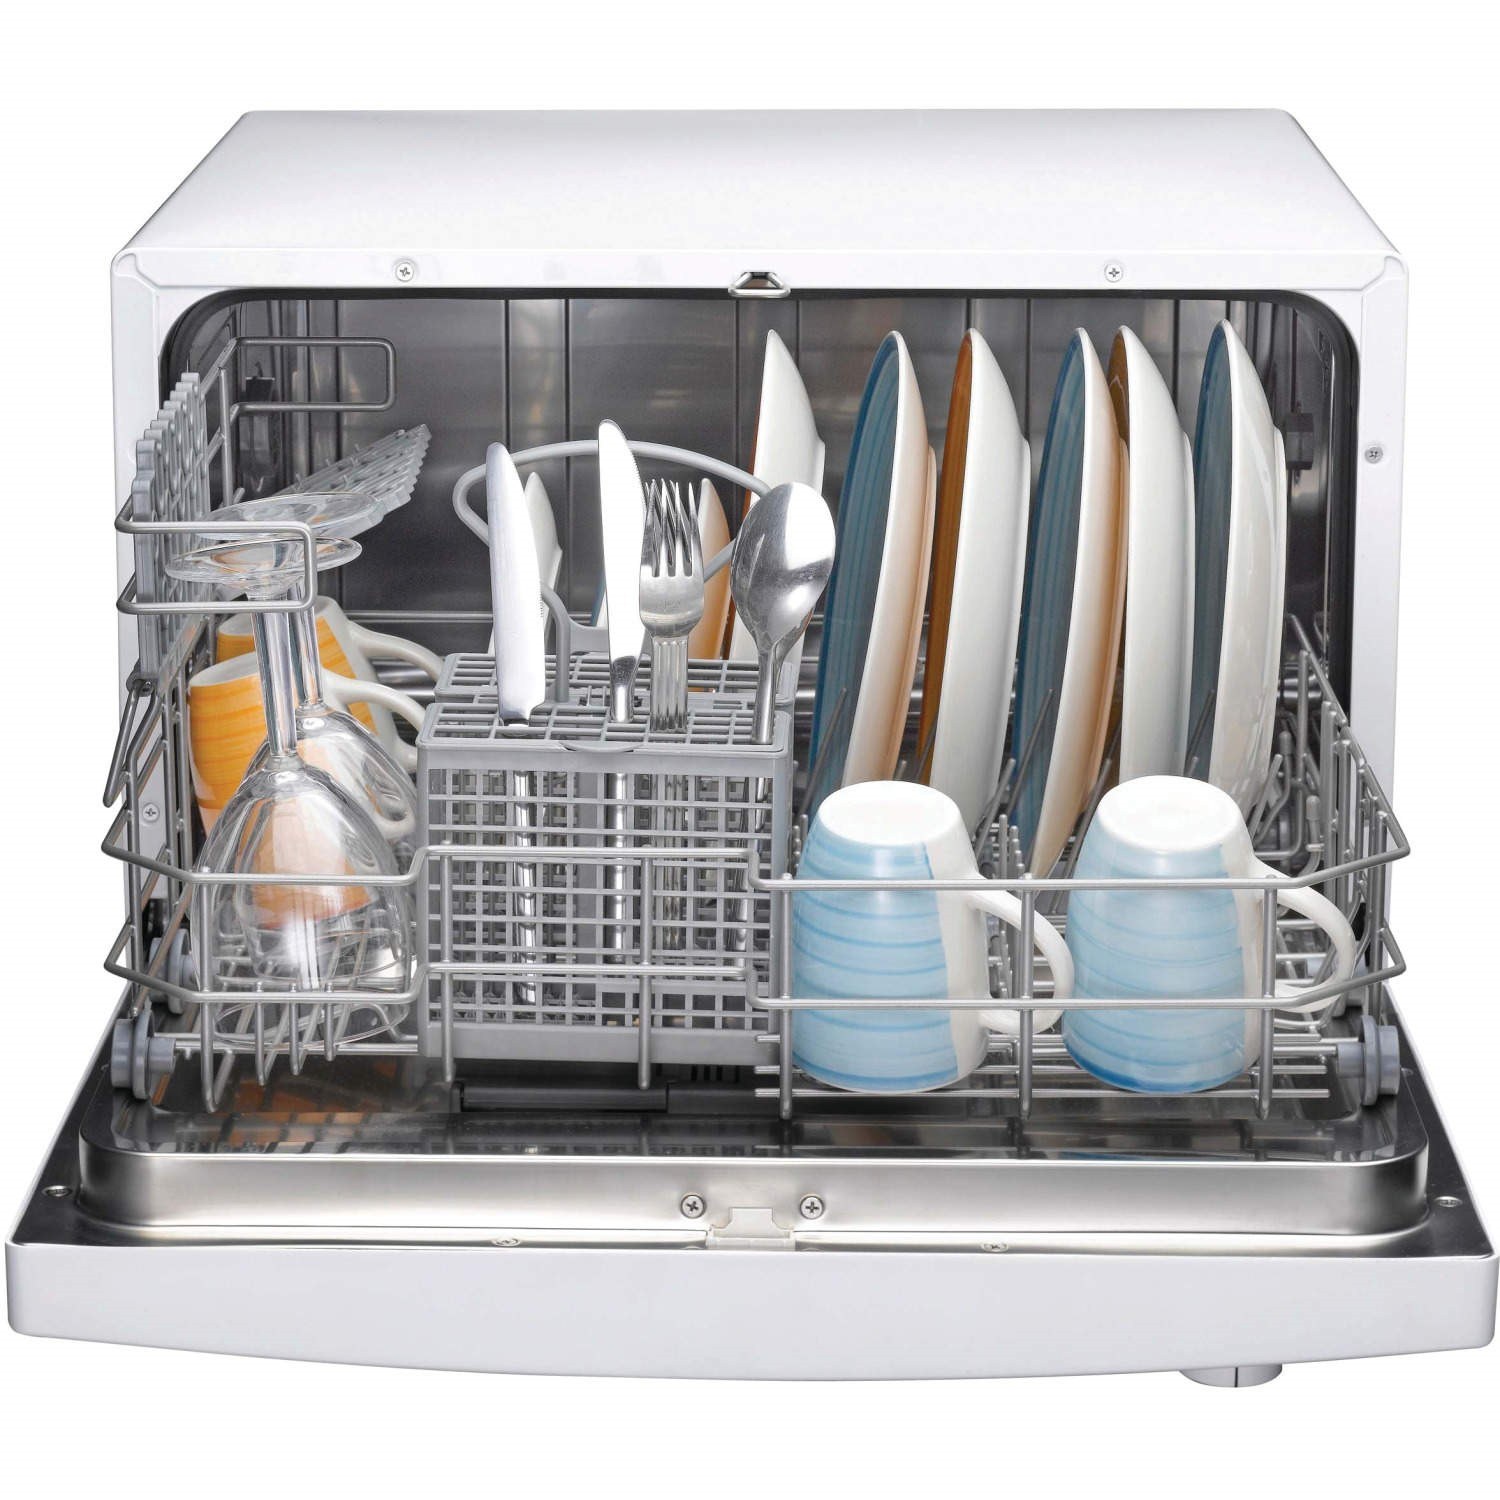 Купить в ростове посудомоечную. Посудомоечная машина Hotpoint-Ariston lv 460 a x. Мини посудомоечная машина Индезит. Посудомойка Bosch компактная.